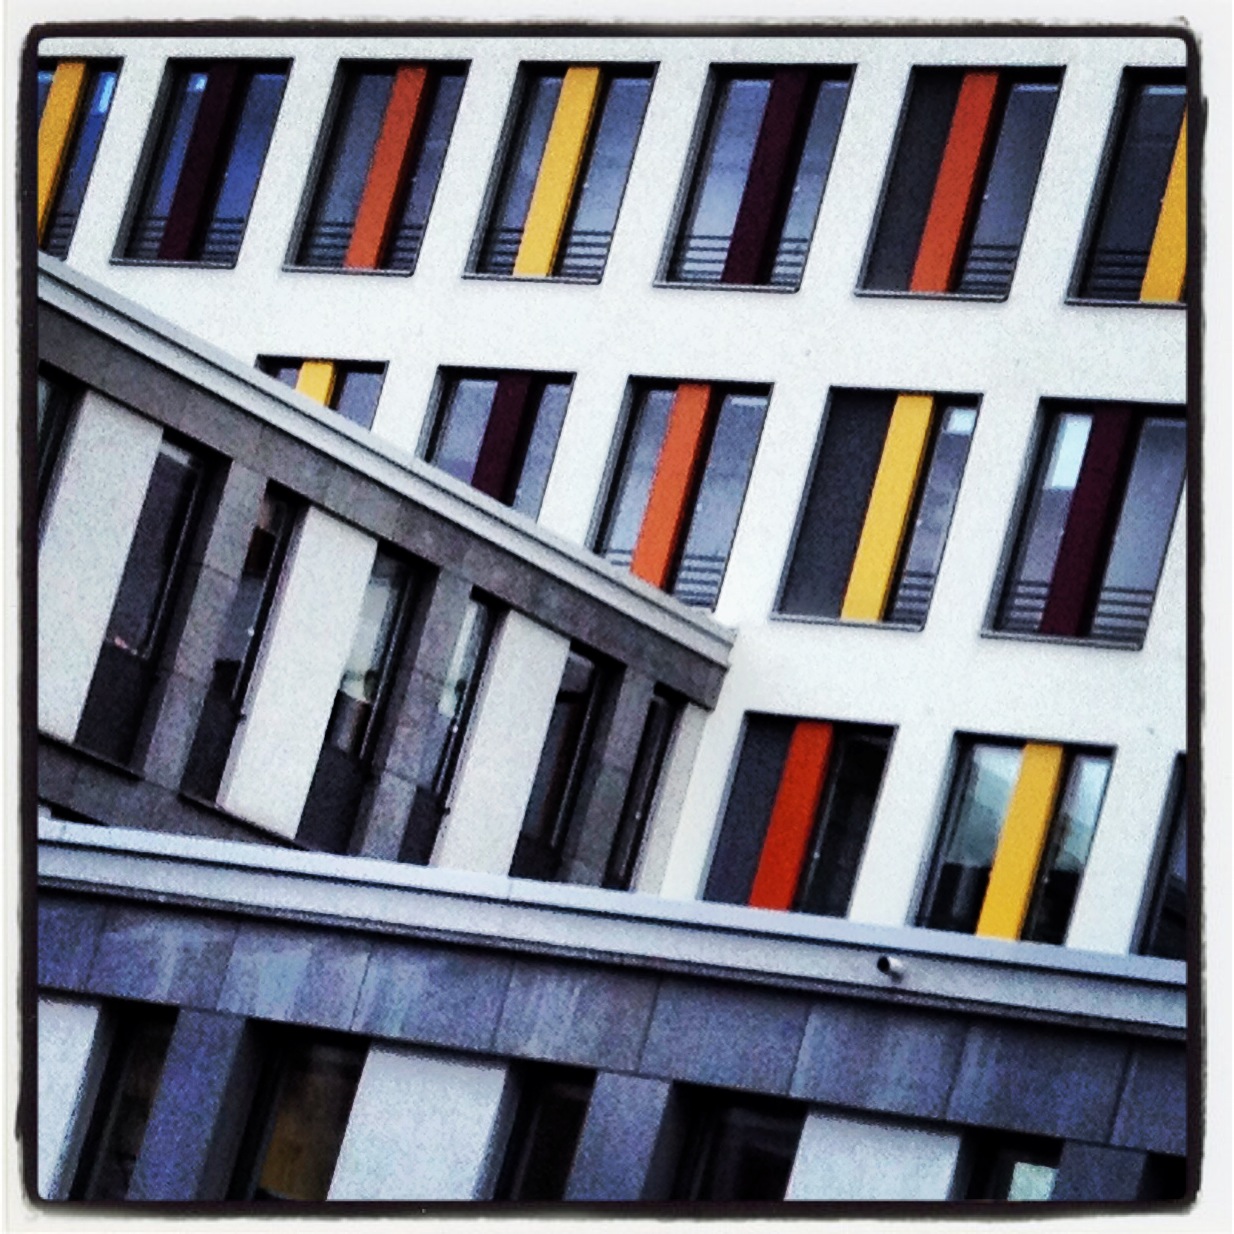 Justizzentrum Wiesbaden || Tim Wullbrandt